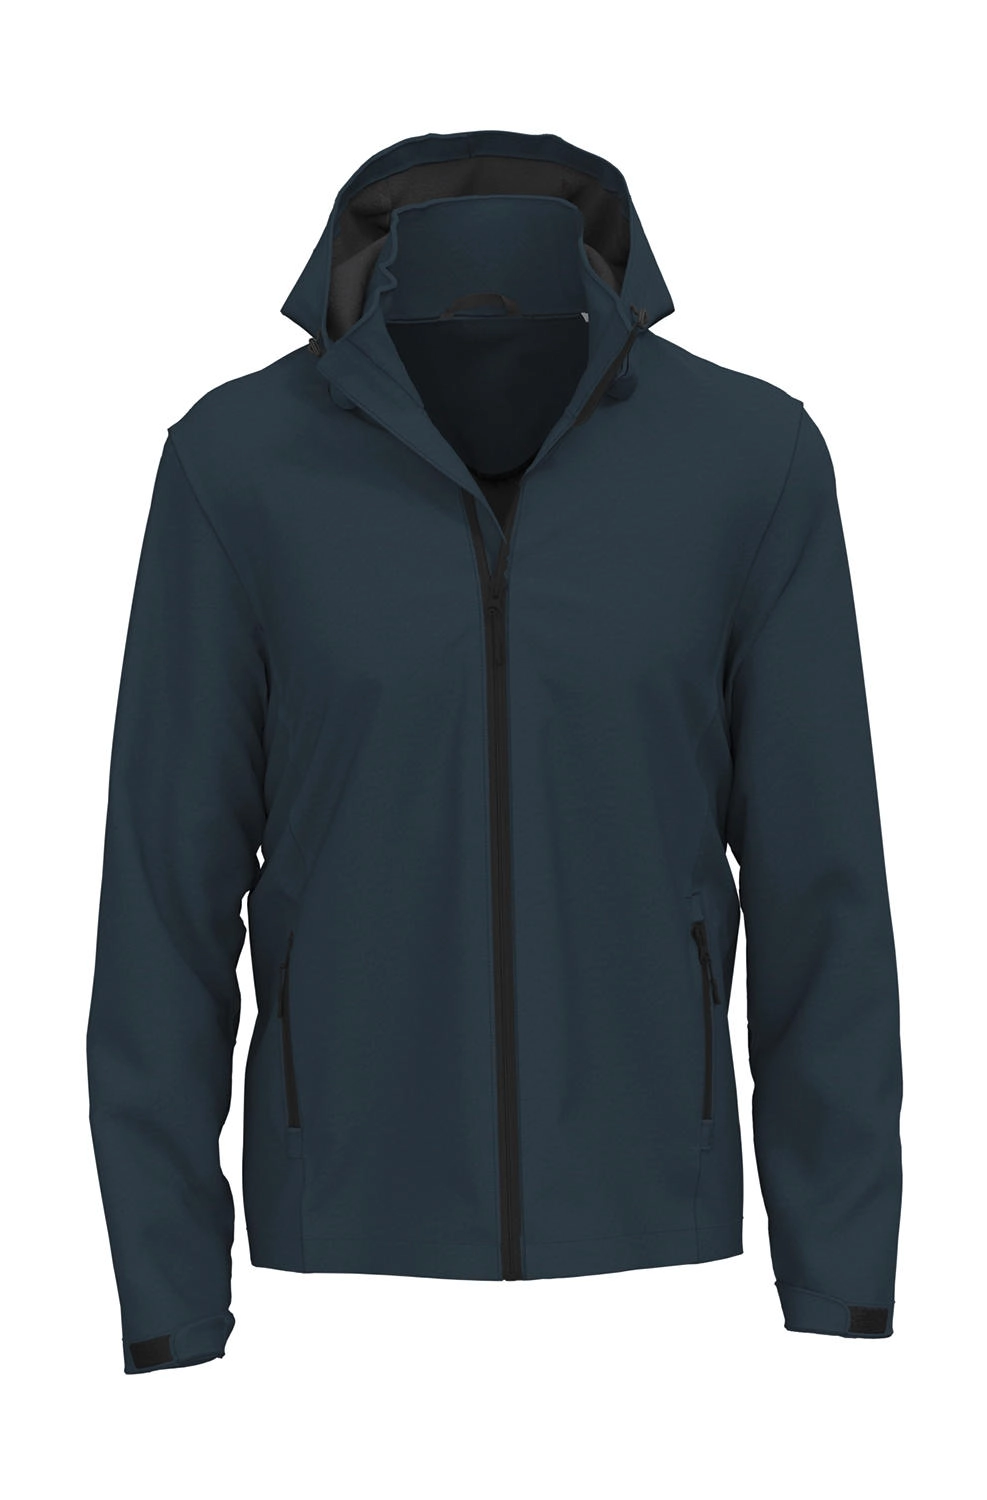 Lux Softshell Jacket Men zum Besticken und Bedrucken in der Farbe Blue Midnight mit Ihren Logo, Schriftzug oder Motiv.